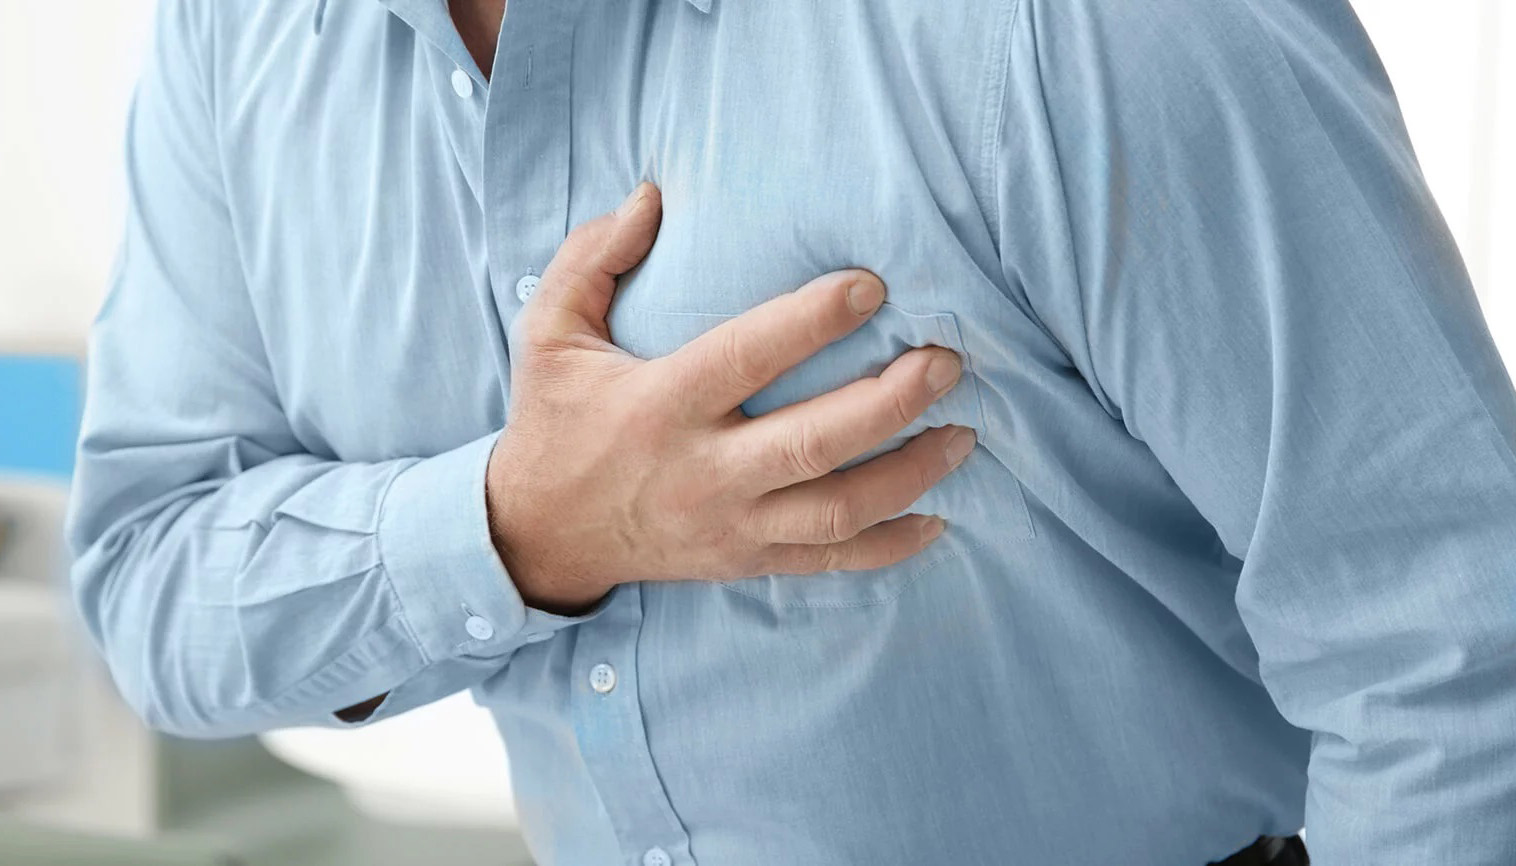 Дела сердечные: могилевские медики рассказали, какие симптомы нельзя игнорировать